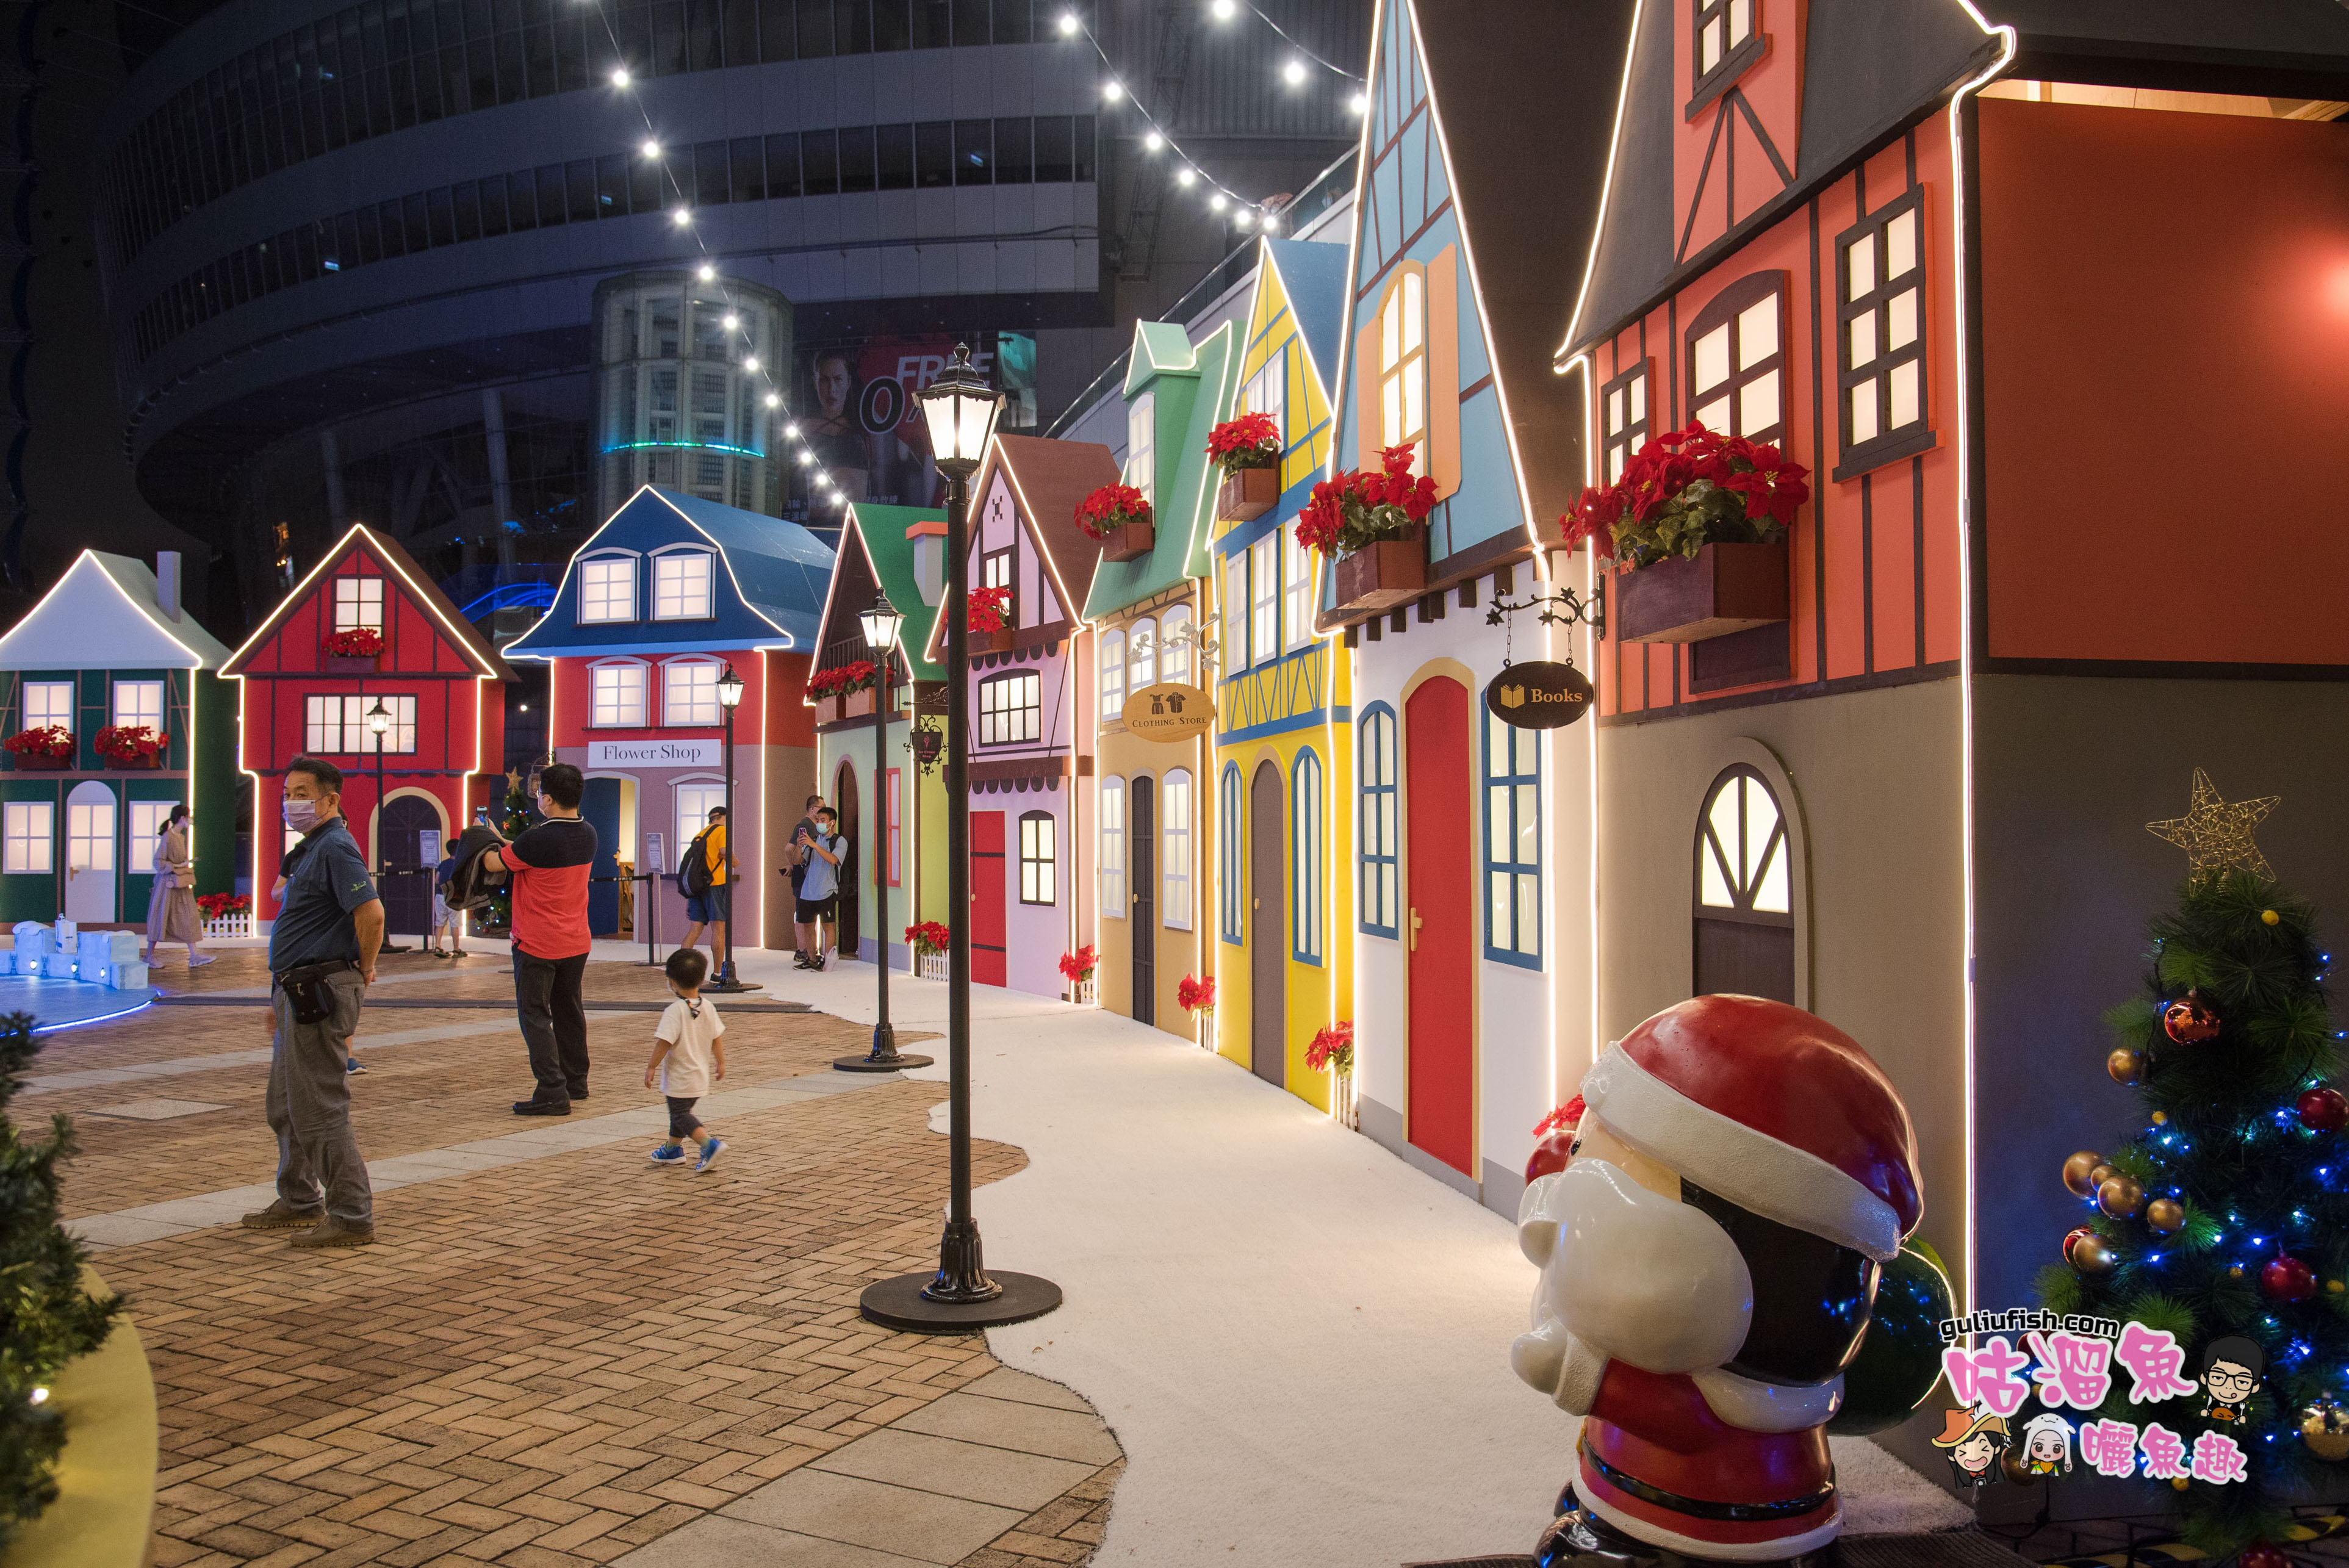 免費景點！偽出國之夢幻童話風歐洲小鎮超美超好拍，2021年首顆聖誕樹亮燈 ：漢神巨蛋聖誕節周年慶